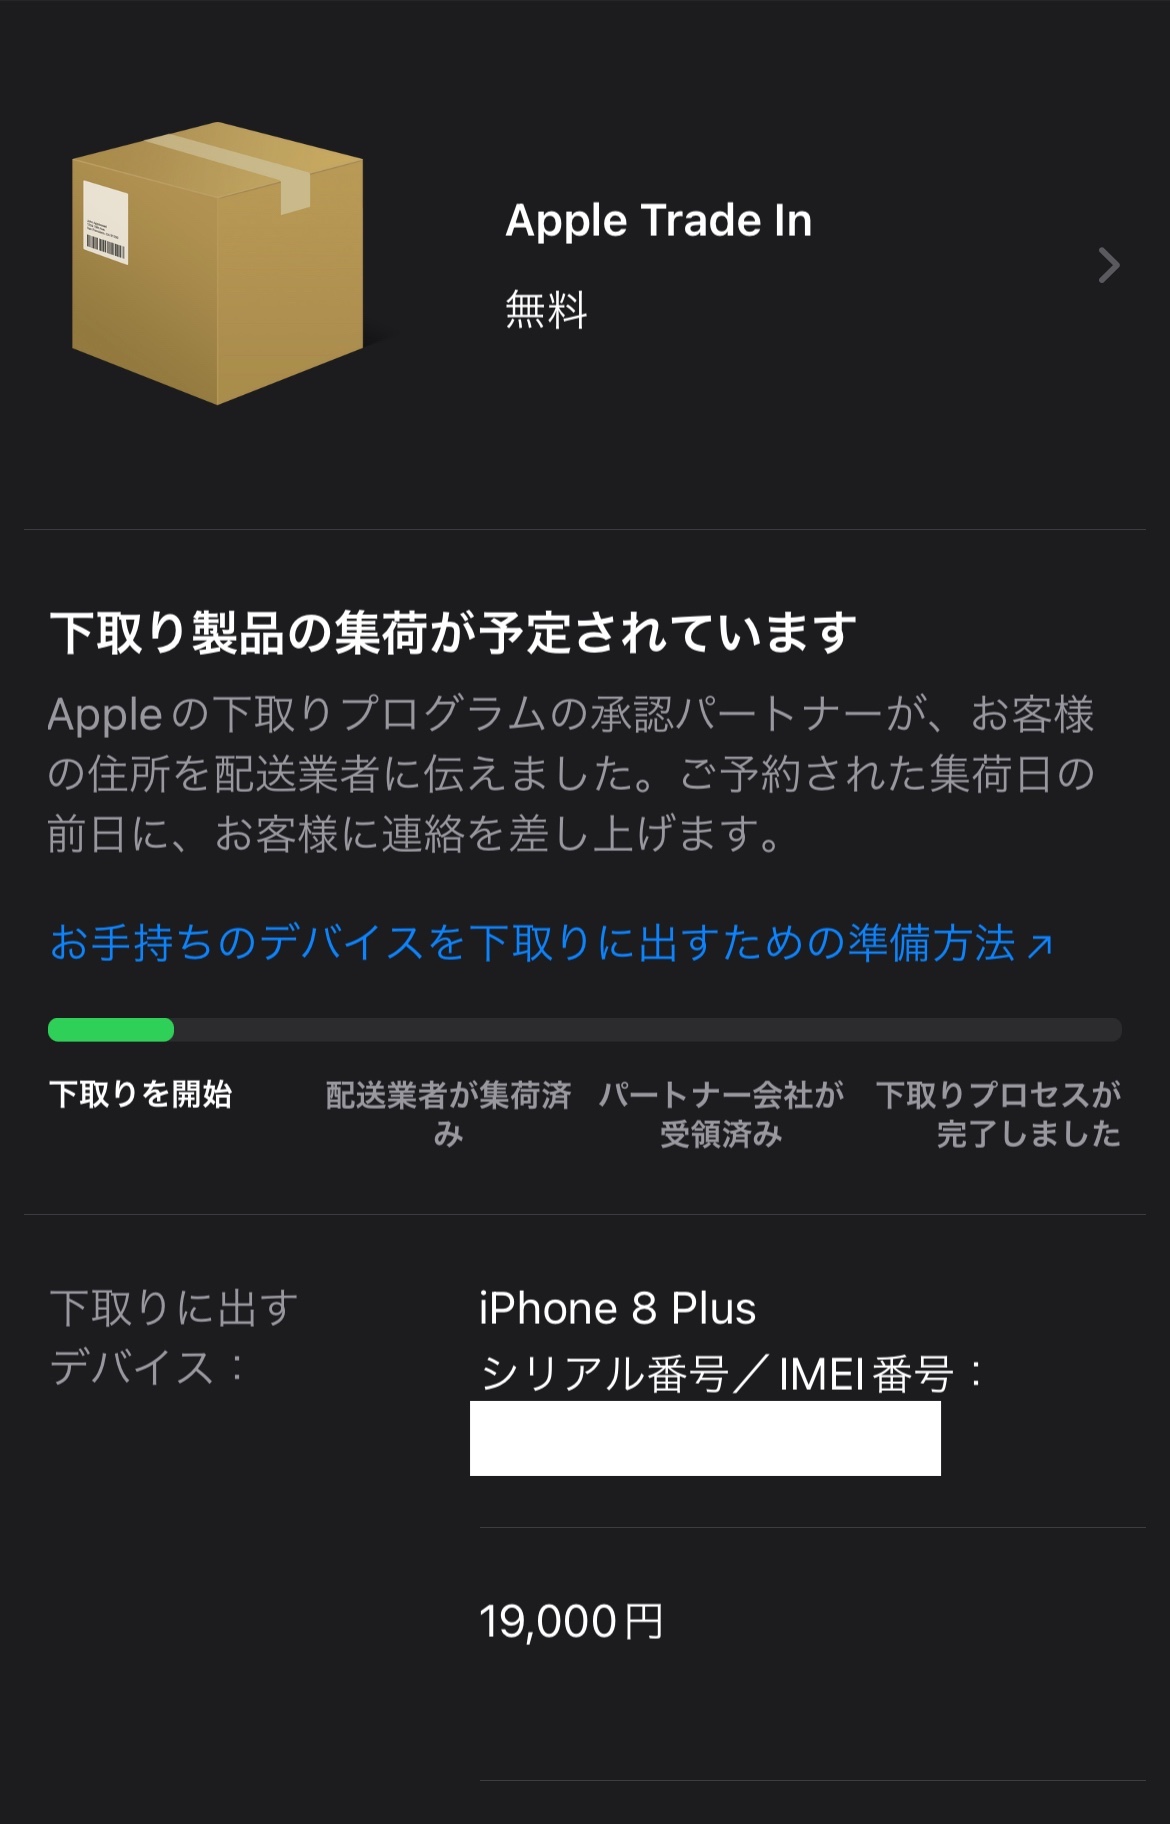 Apple trade in 古いiP… - Apple コミュニティ